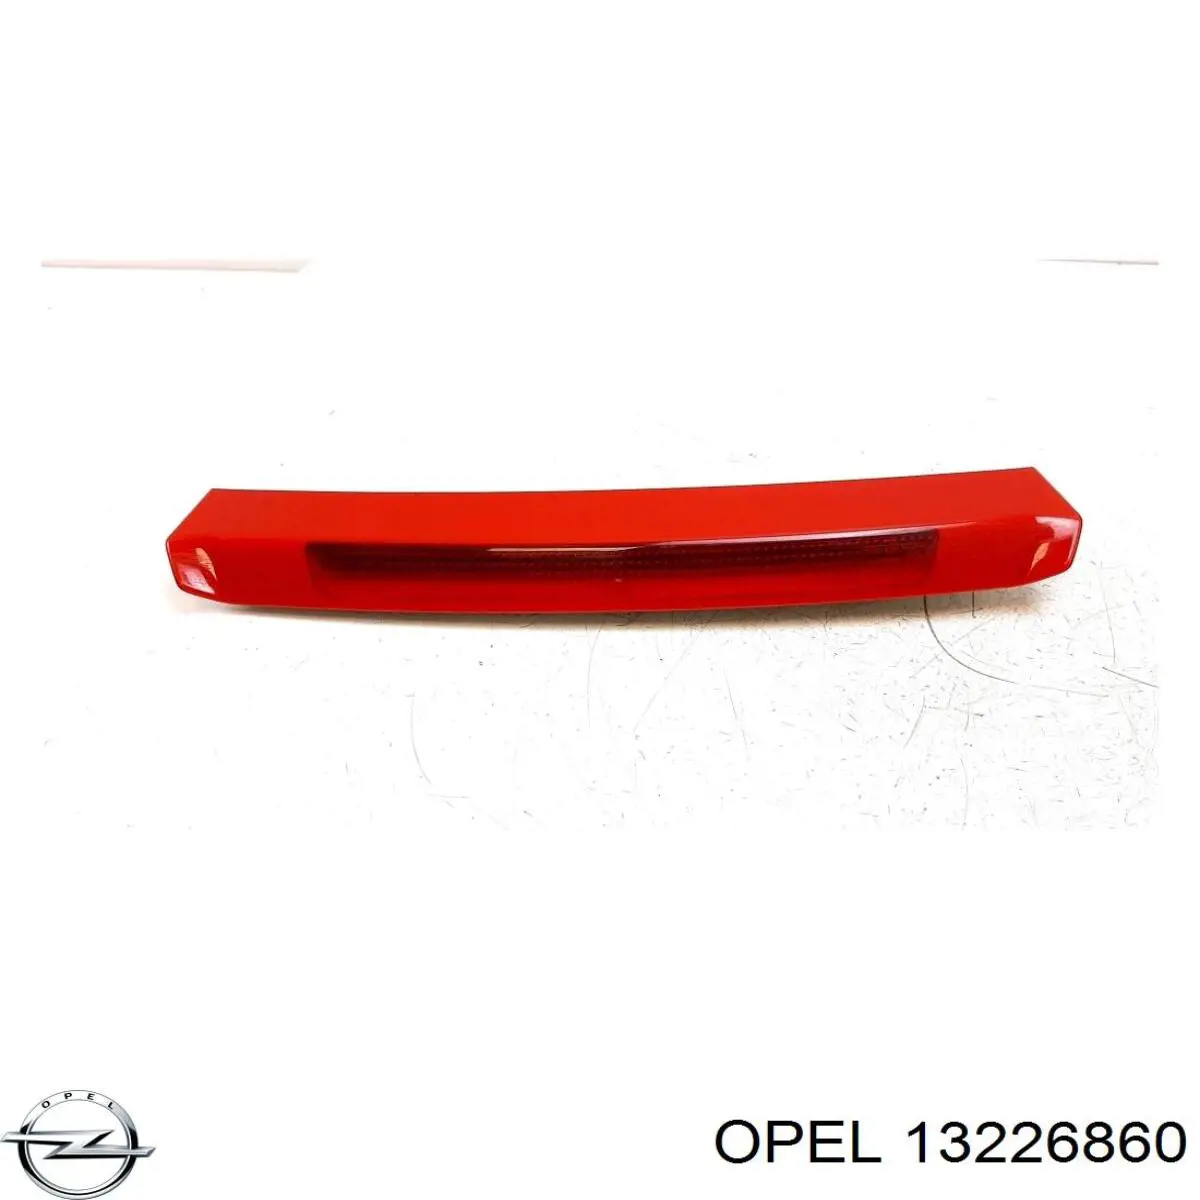 13226860 Opel lanterna traseira central